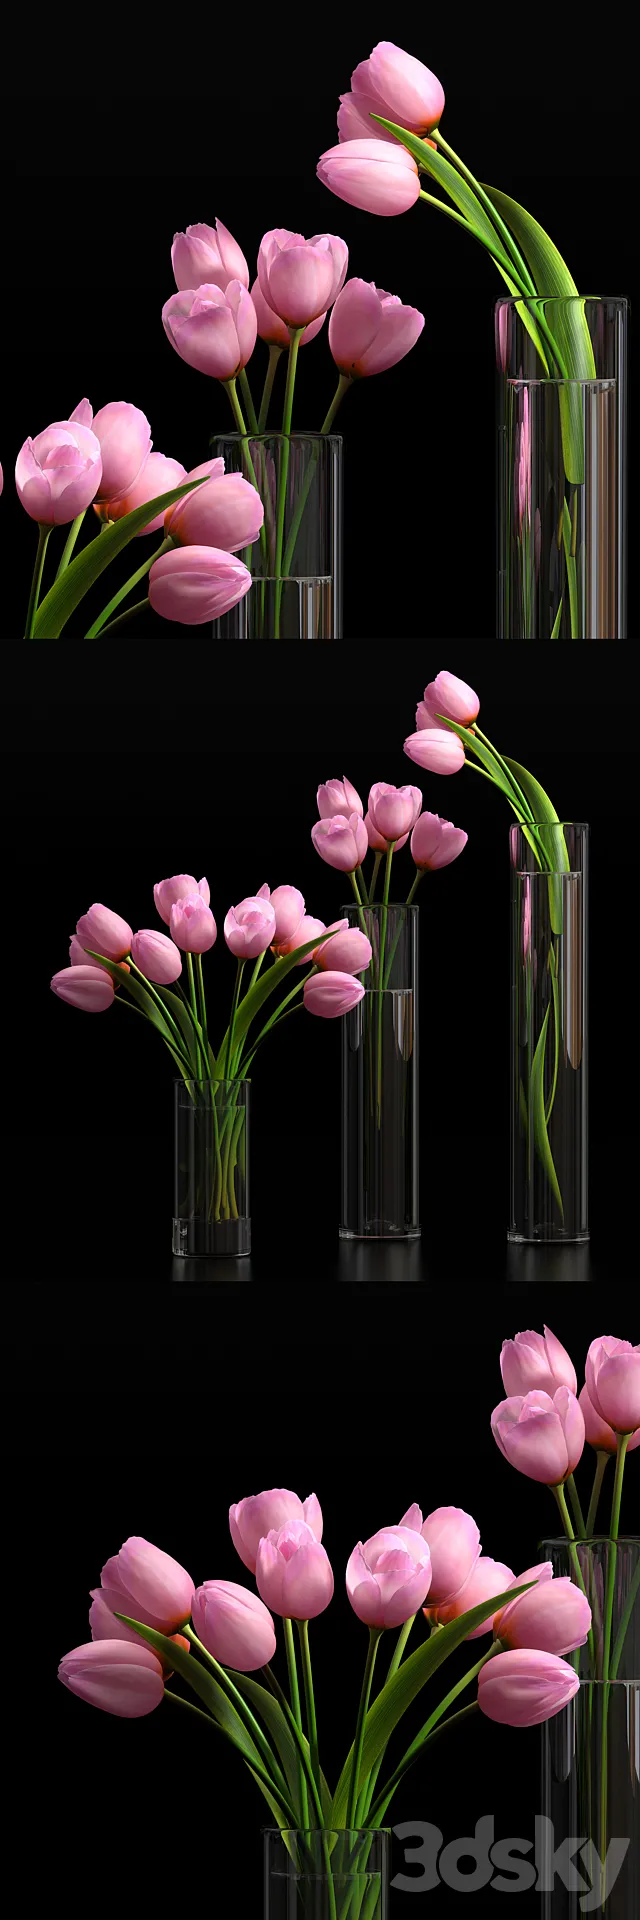 Plants – Flowers – 3D Models Download – 0412